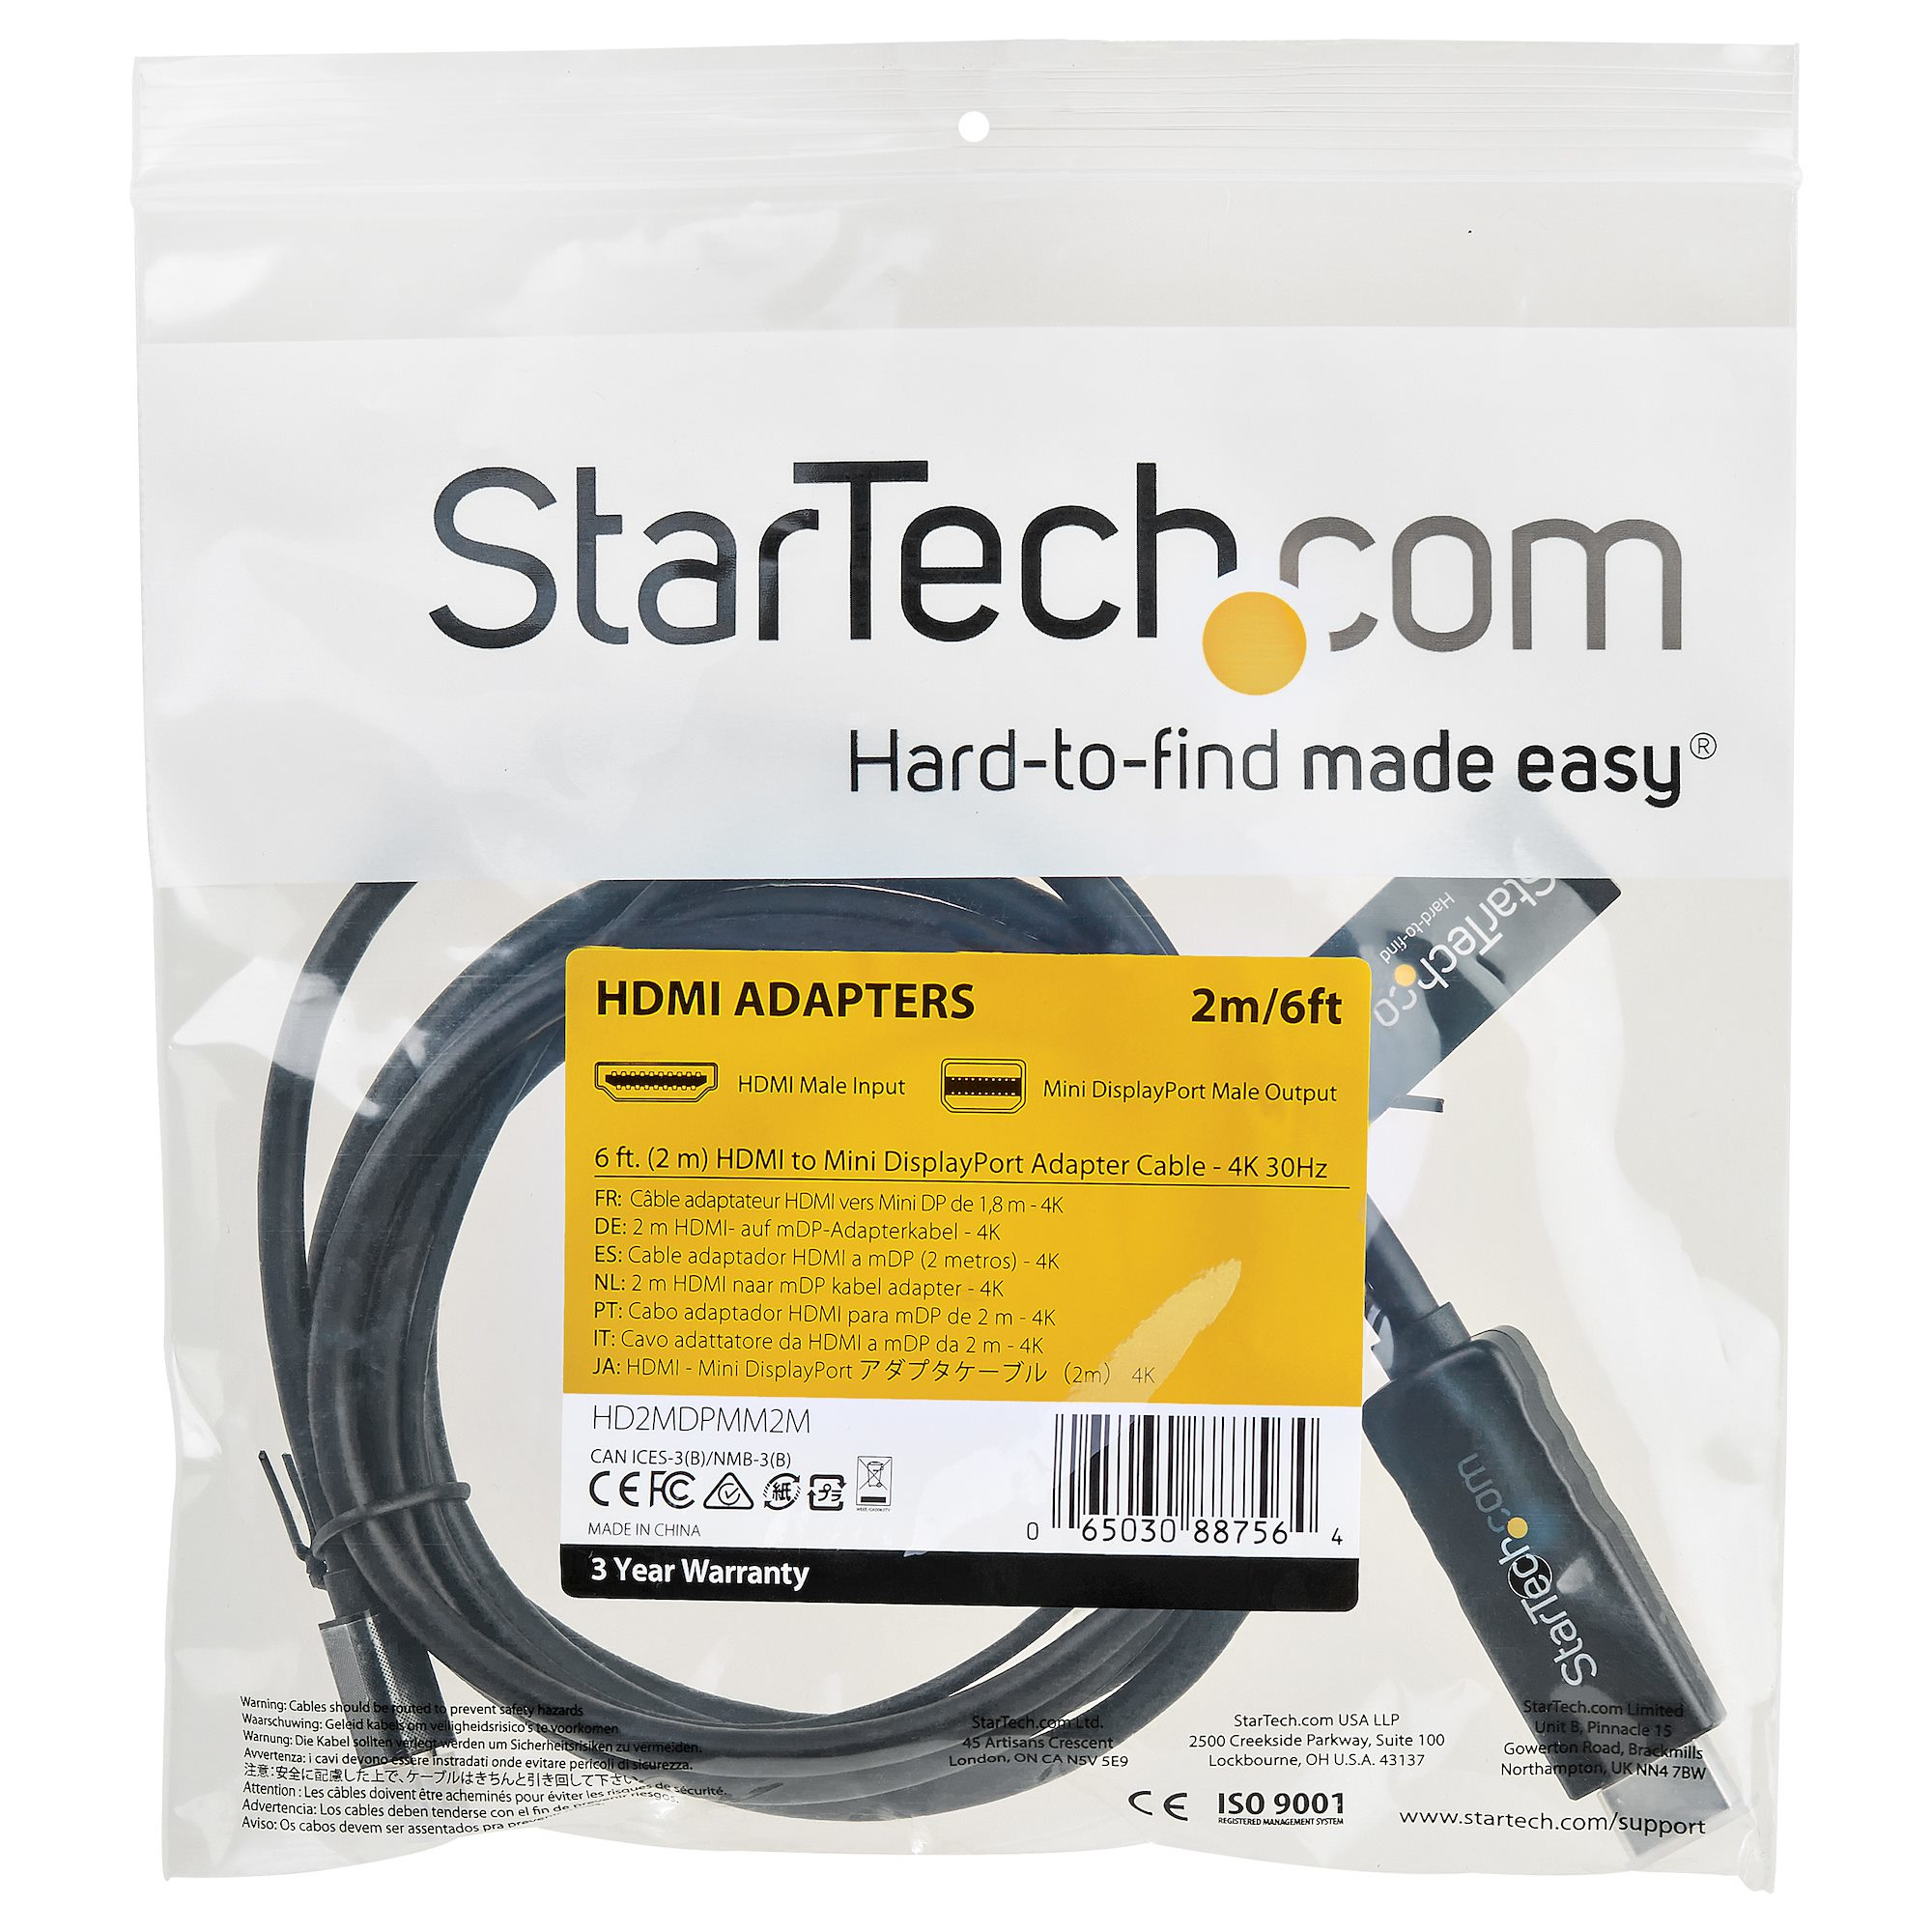 Cable y adaptadores de audio y vídeo HDMI de 1 HDMI macho a 1 HDMI macho  Tblack Cabo Hdmi 2 Metros hdmi de 2m